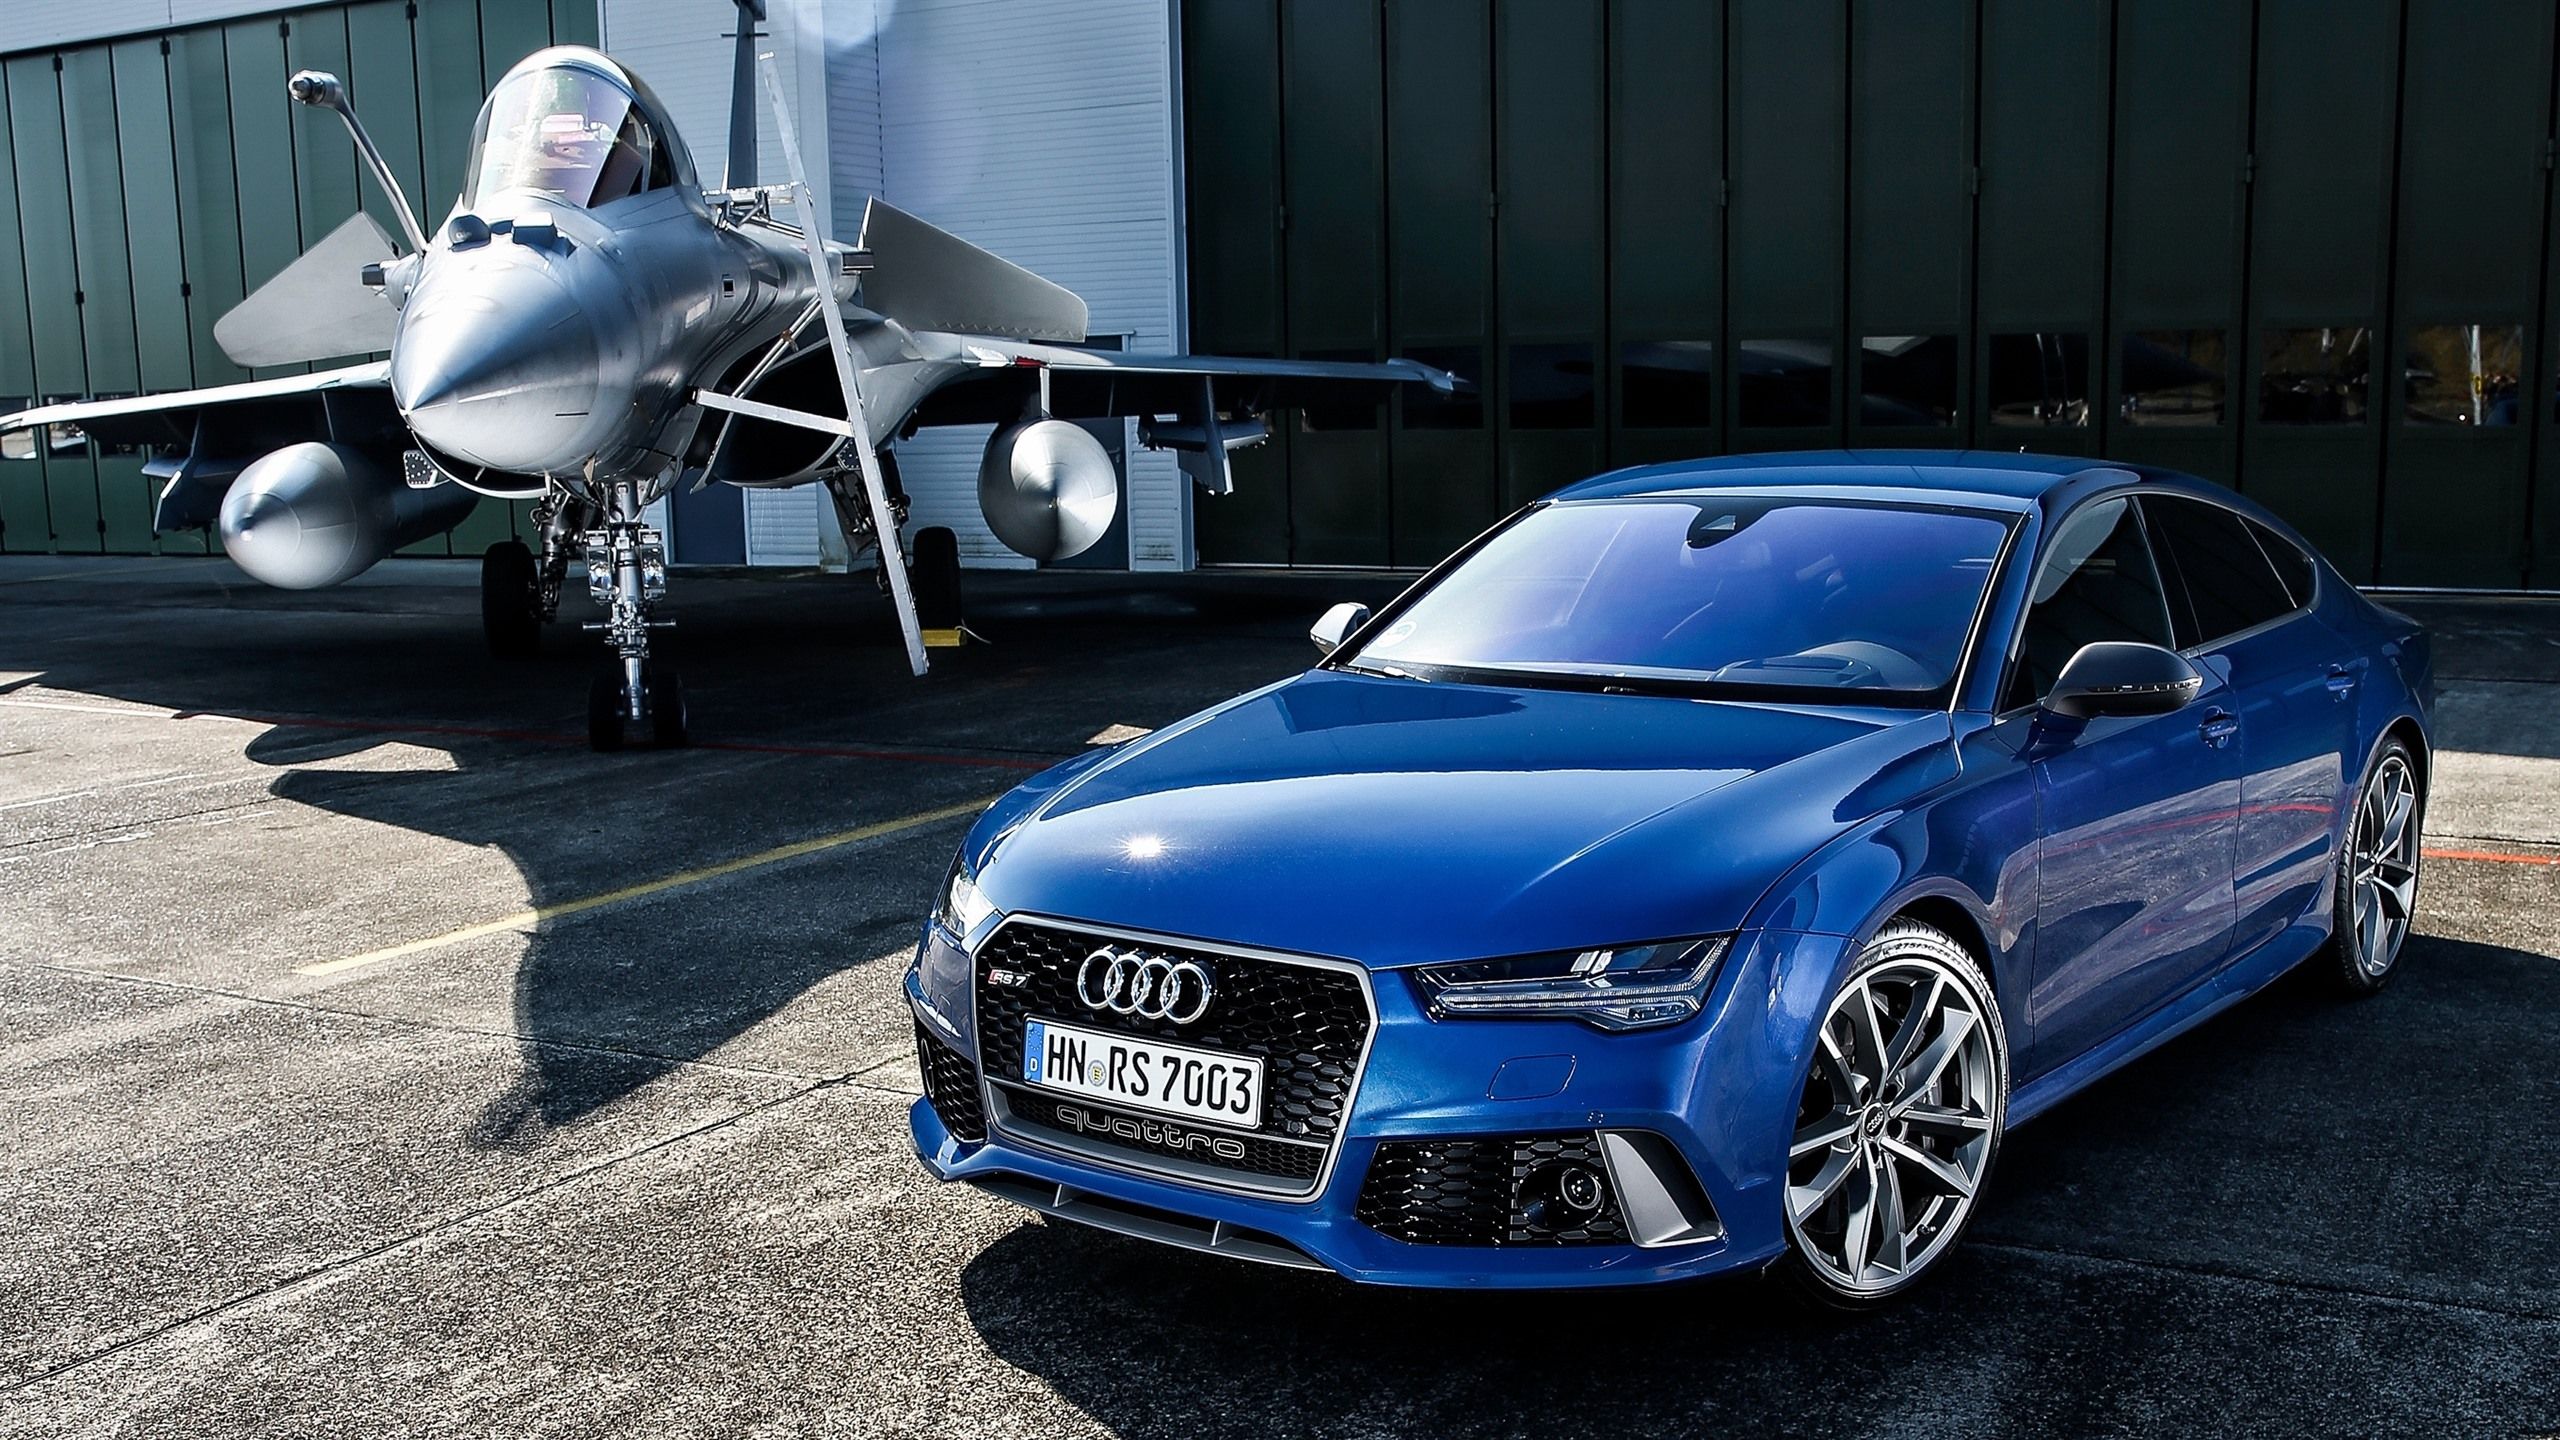  Audi RS7 Hintergrundbild 2560x1440. Audi RS7 Sportback blaues Auto und Kämpfer 2560x1440 QHD Hintergrundbilder, HD, Bild